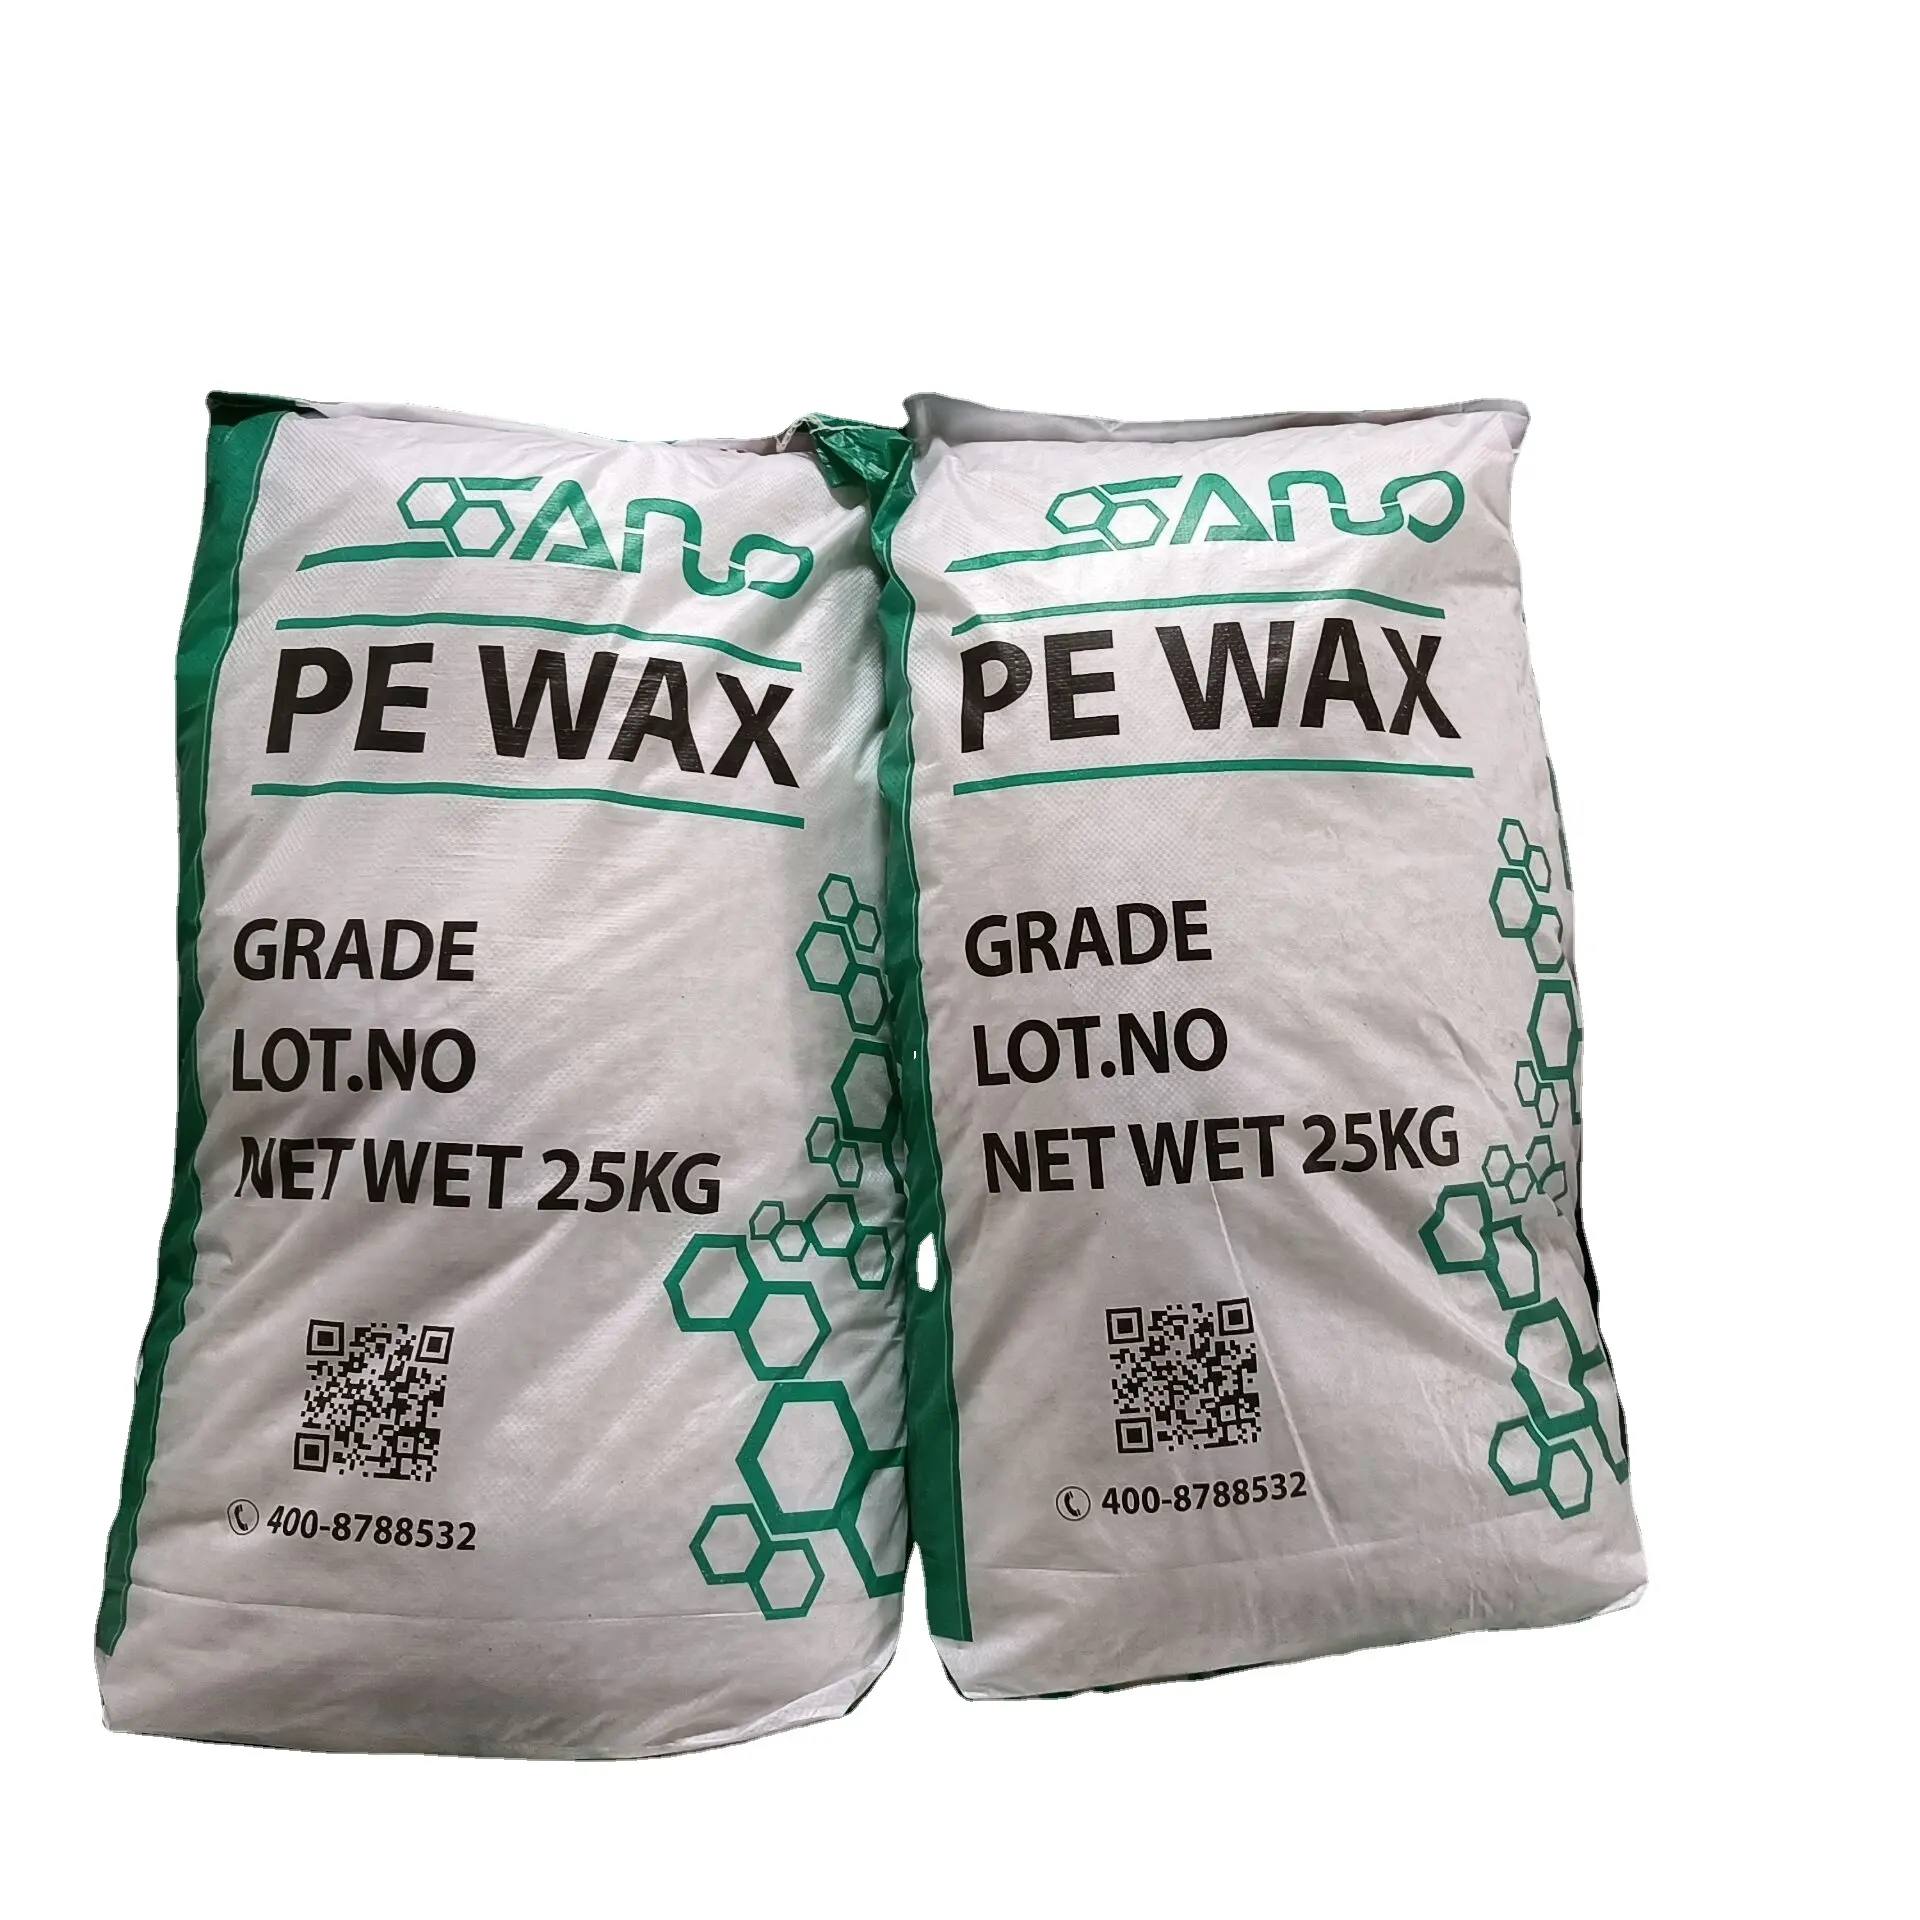 Bougie blanche en polyéthylène, cire PE AC6, bougie supplémentaire, cire spéciale pour PE, PP et PVC